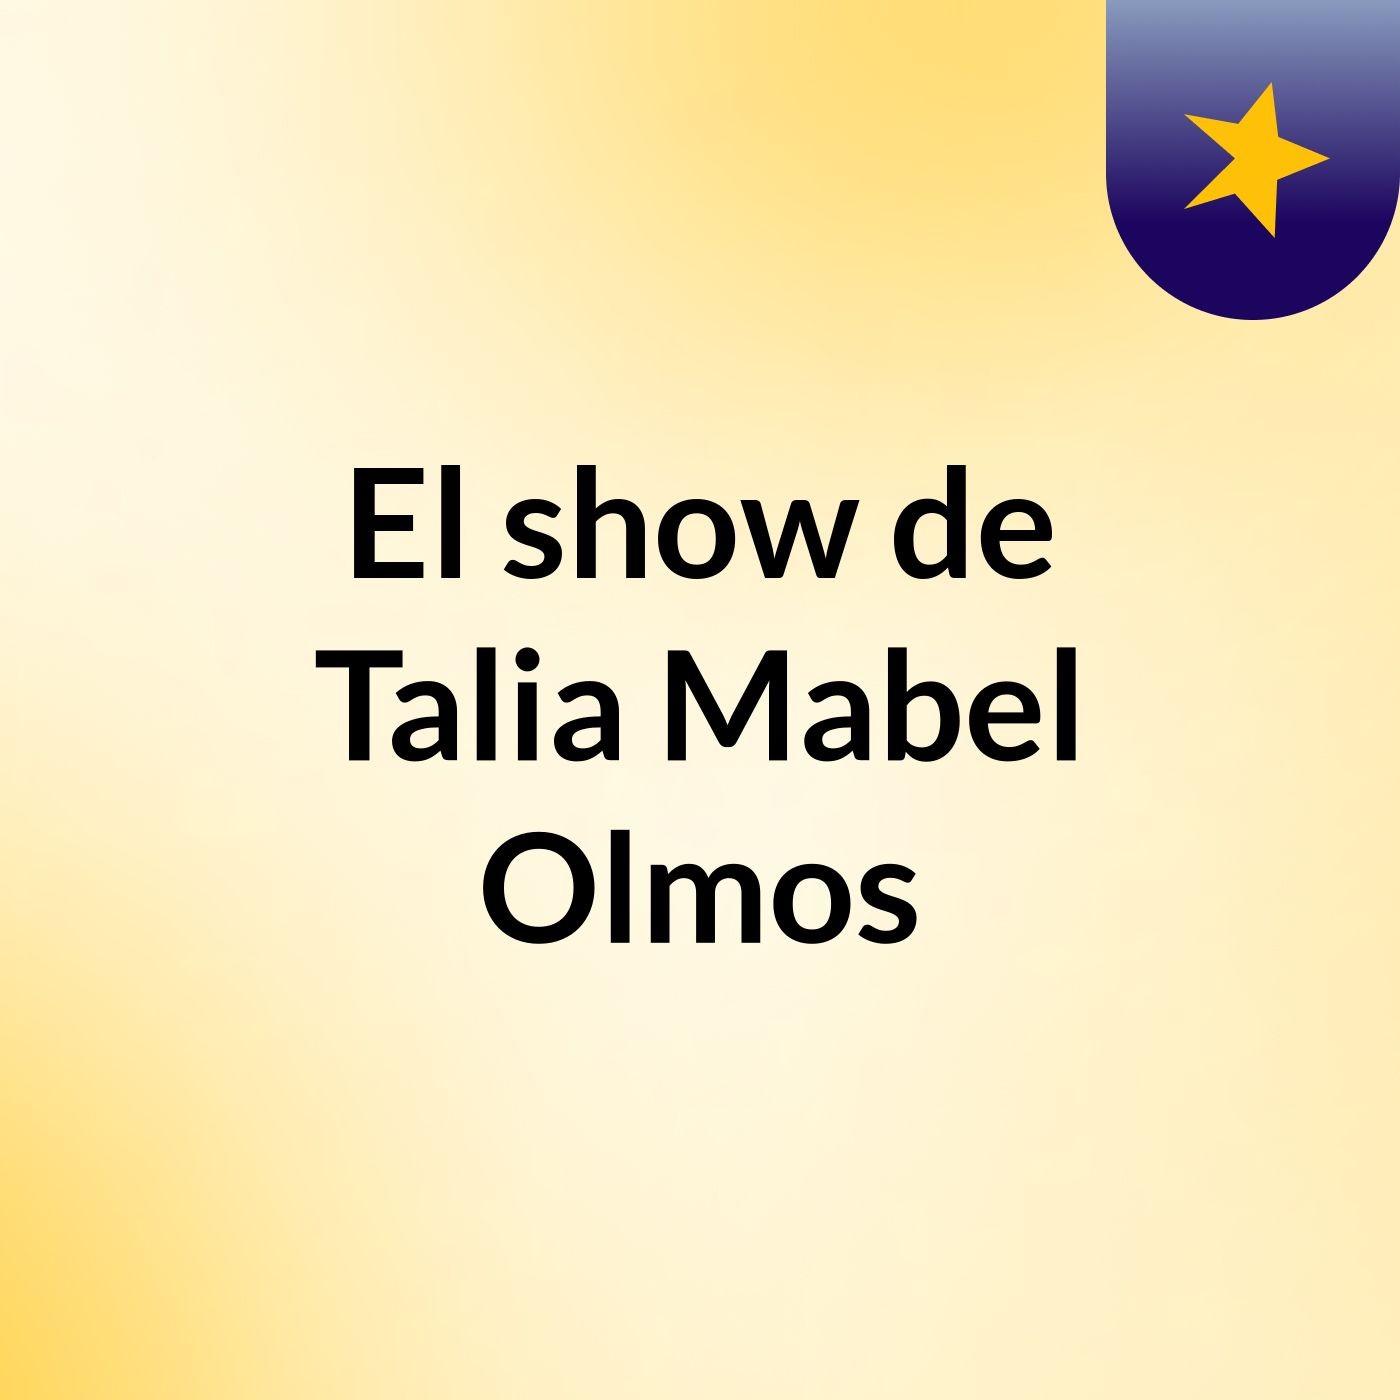 El show de Talia Mabel Olmos